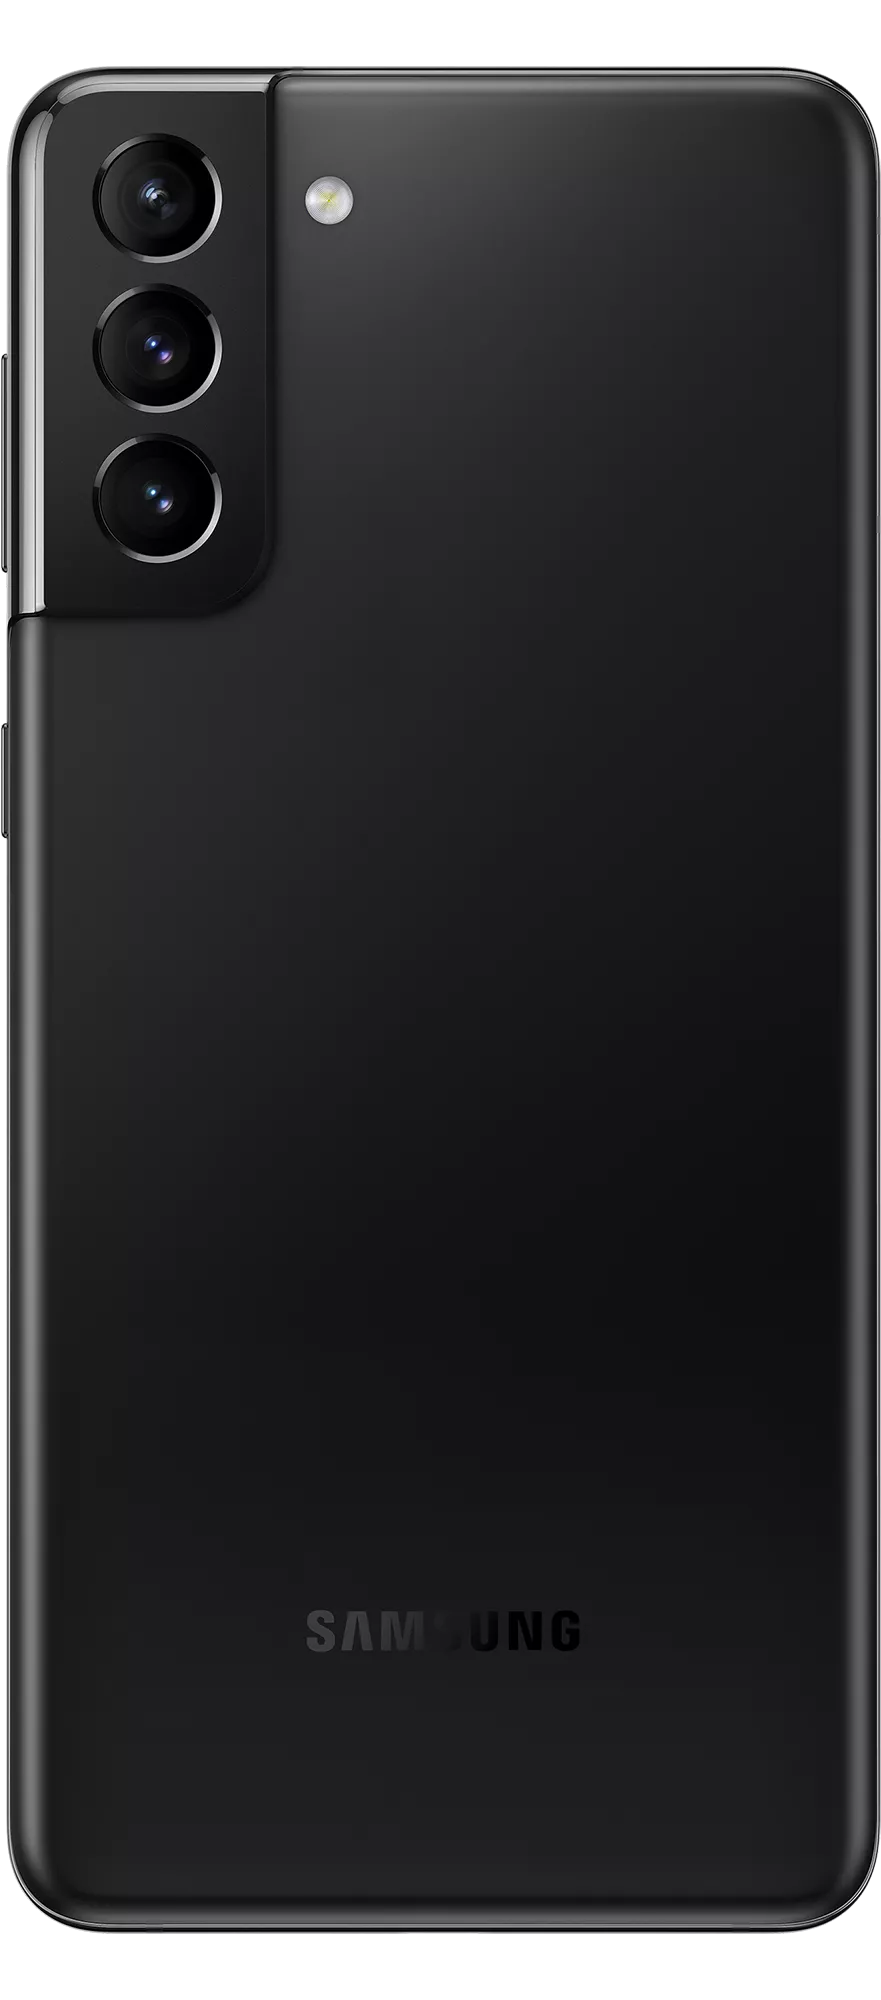 Samsung Galaxy S21 Plus 256GB Phantom Black |